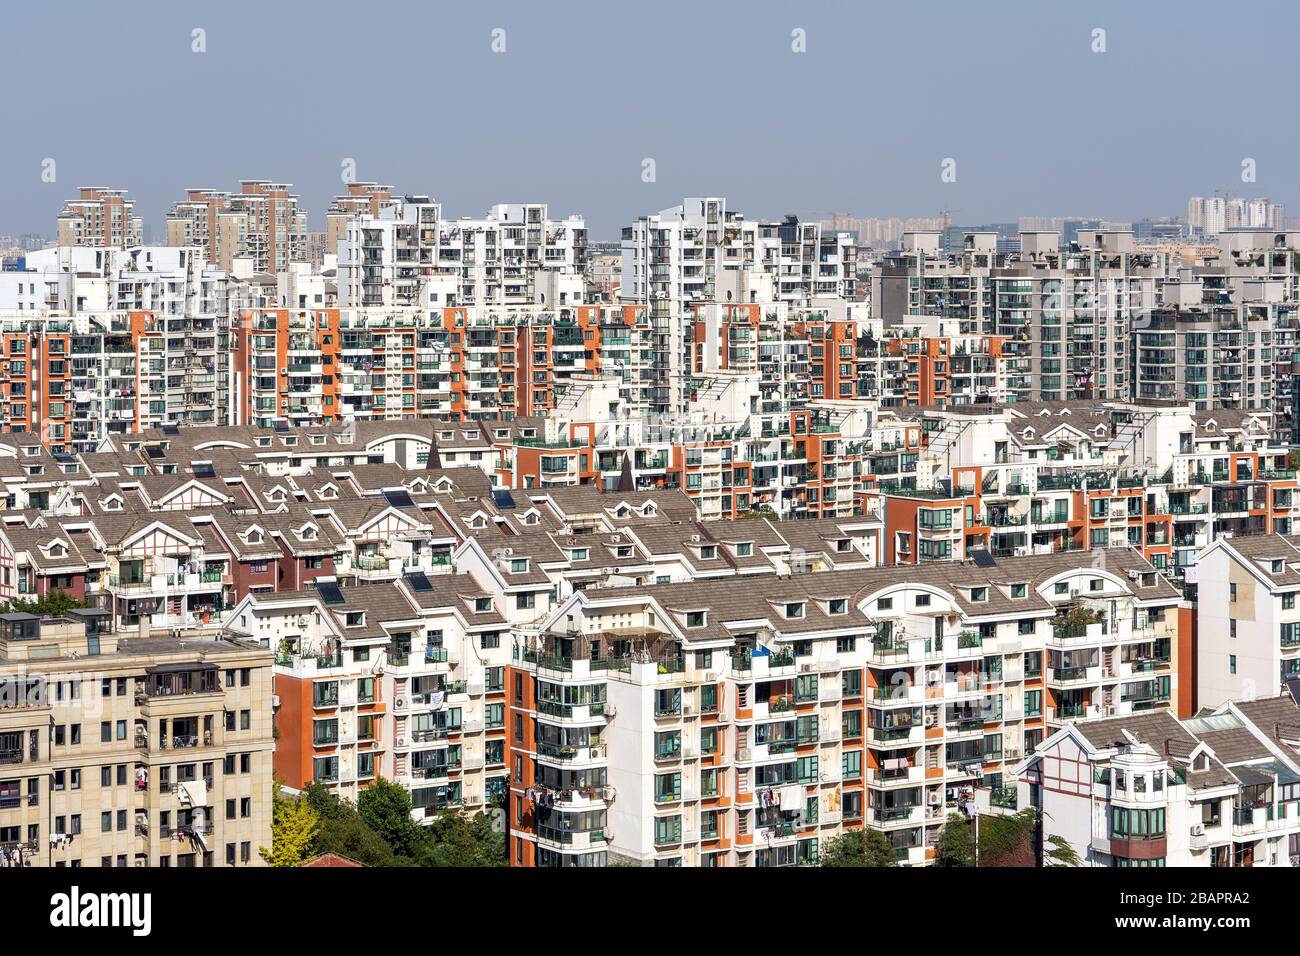 Skyline della città cinese regolare in una giornata di sole. Edifici comuni nel quartiere residenziale. Architettura moderna e generica a Shanghai. Foto Stock